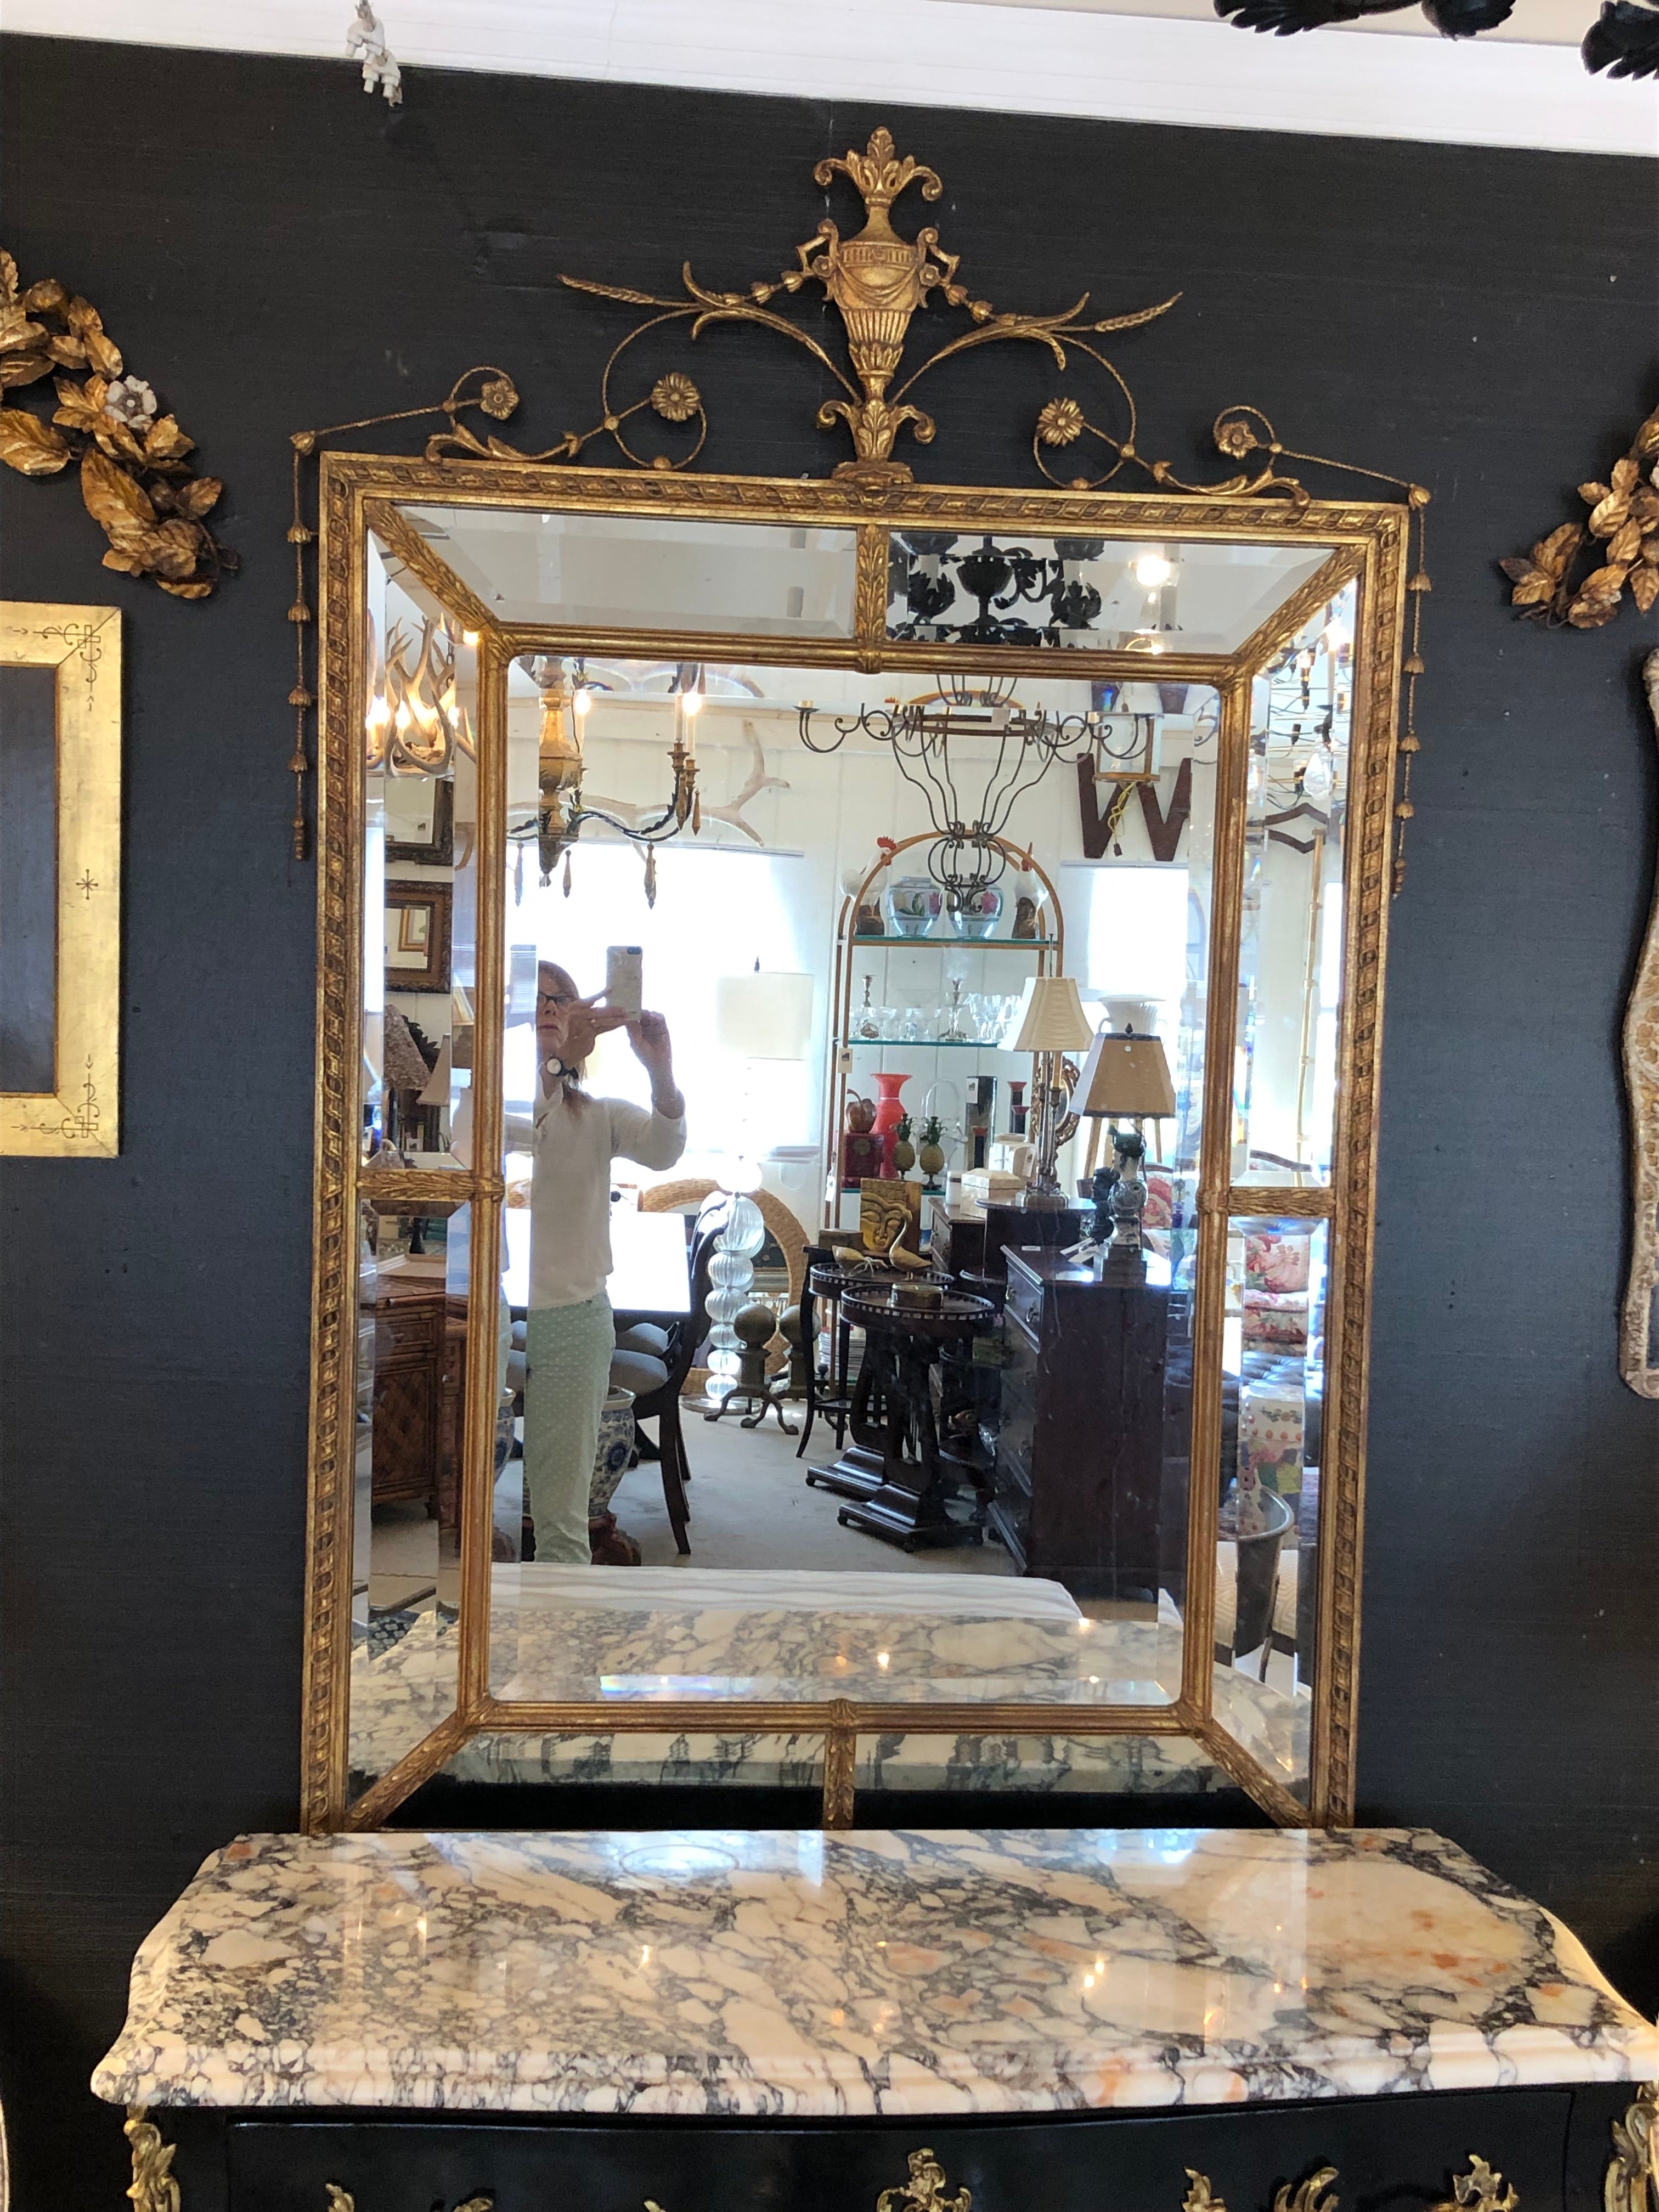 Sehr großer, eleganter Spiegel aus Goldholz mit mehreren abgeschrägten Spiegelflächen und einer geschnitzten Urne an der Spitze.  Innenspiegel 25,5 w  37 h



KamilleT



